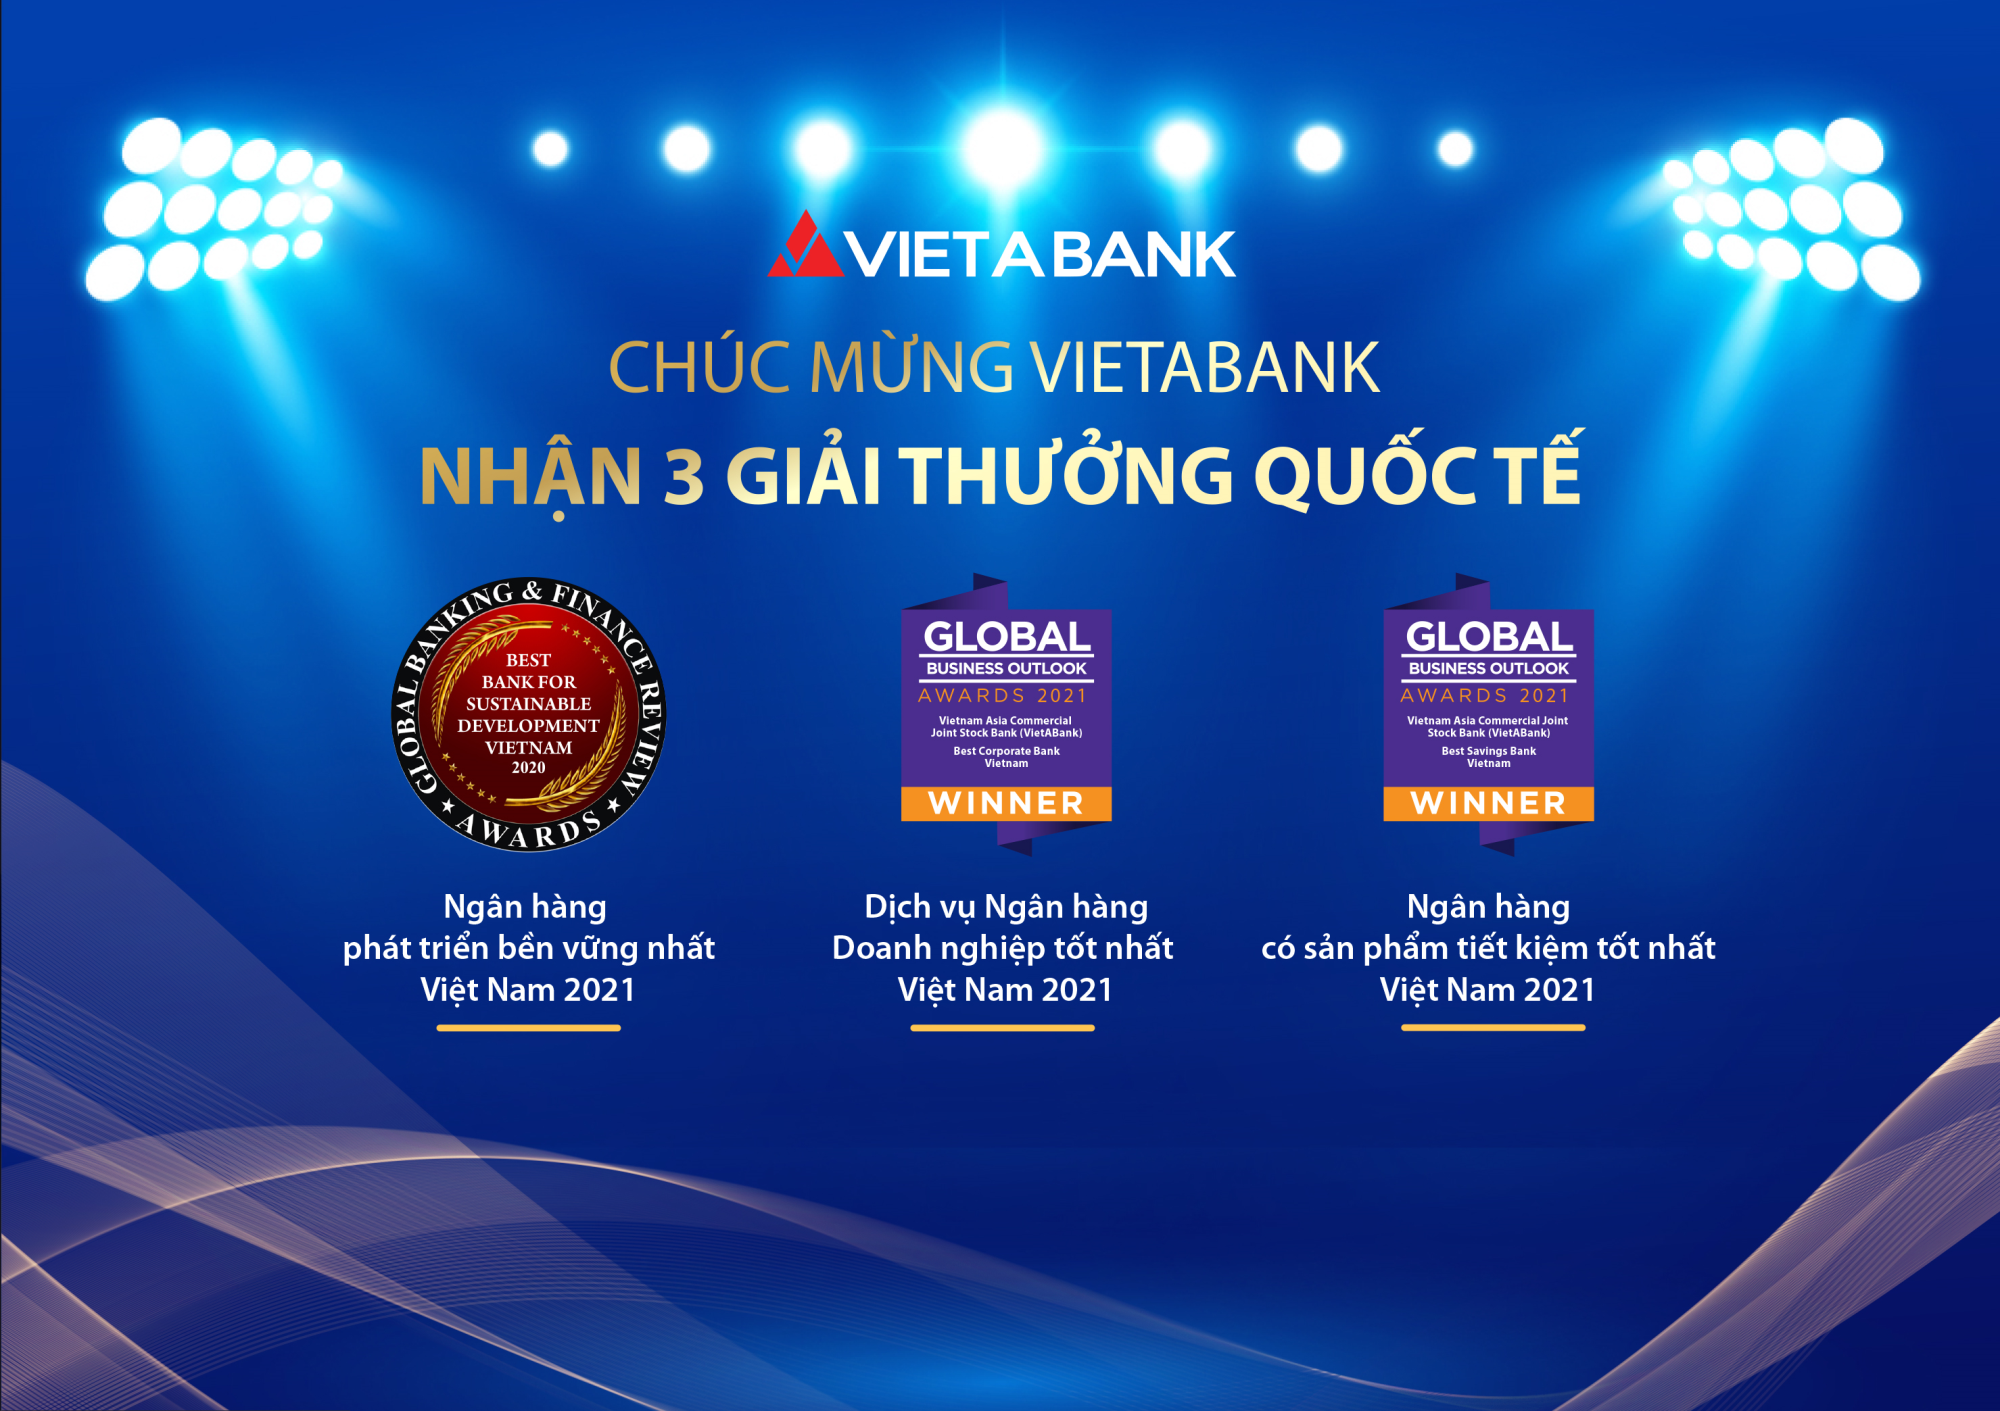 VietABank vinh dự nhận 3 giải thưởng quốc tế uy tín